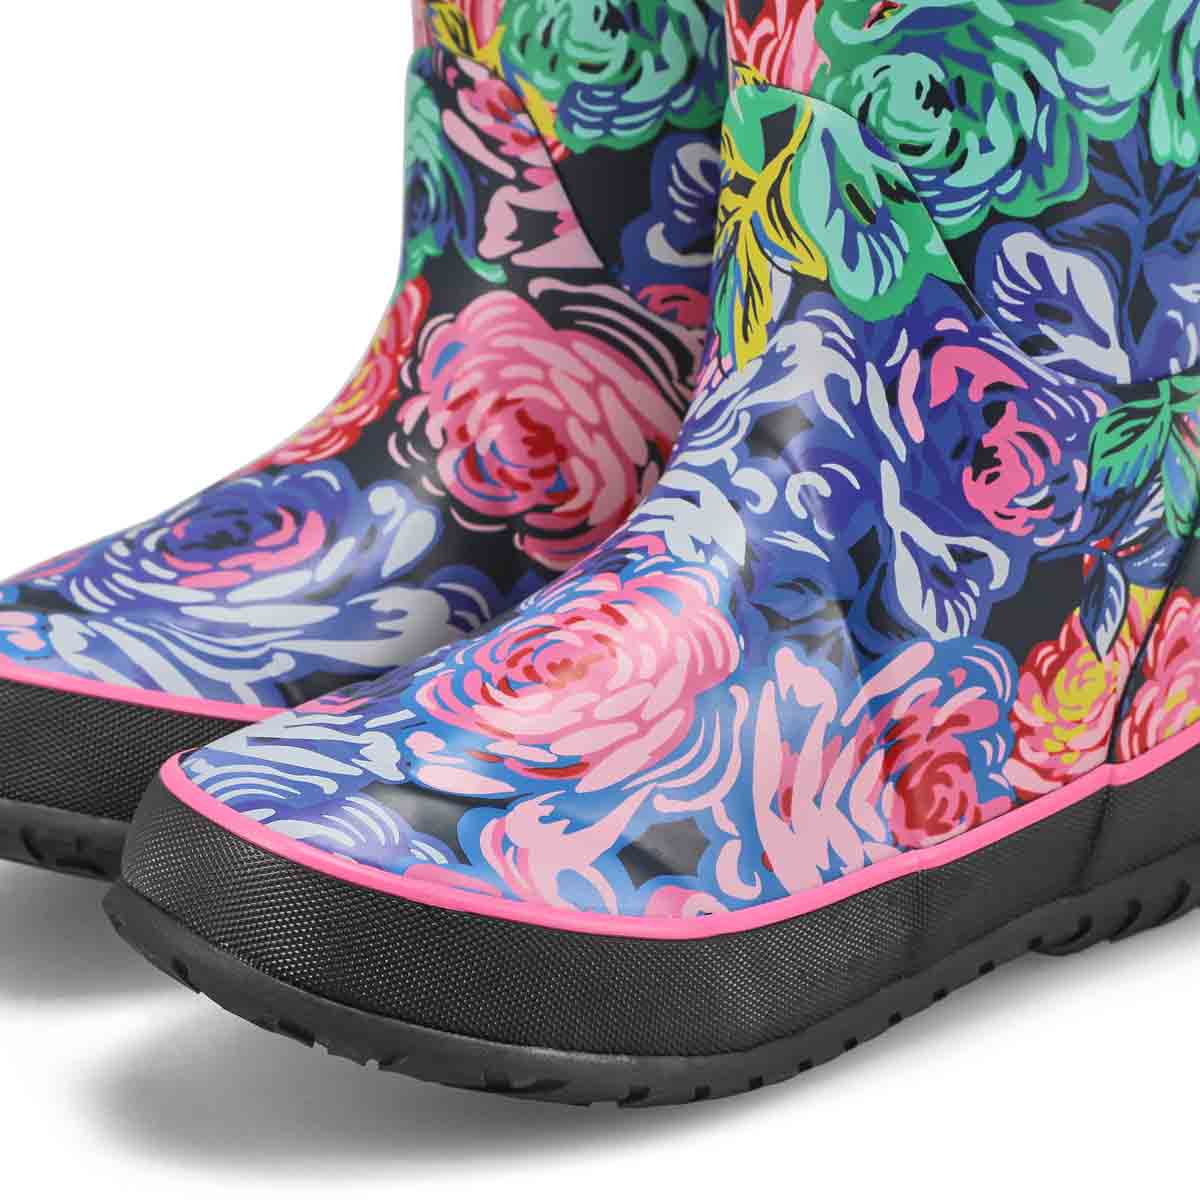 Girls Rose Garden Rain Boot - Rose Multi